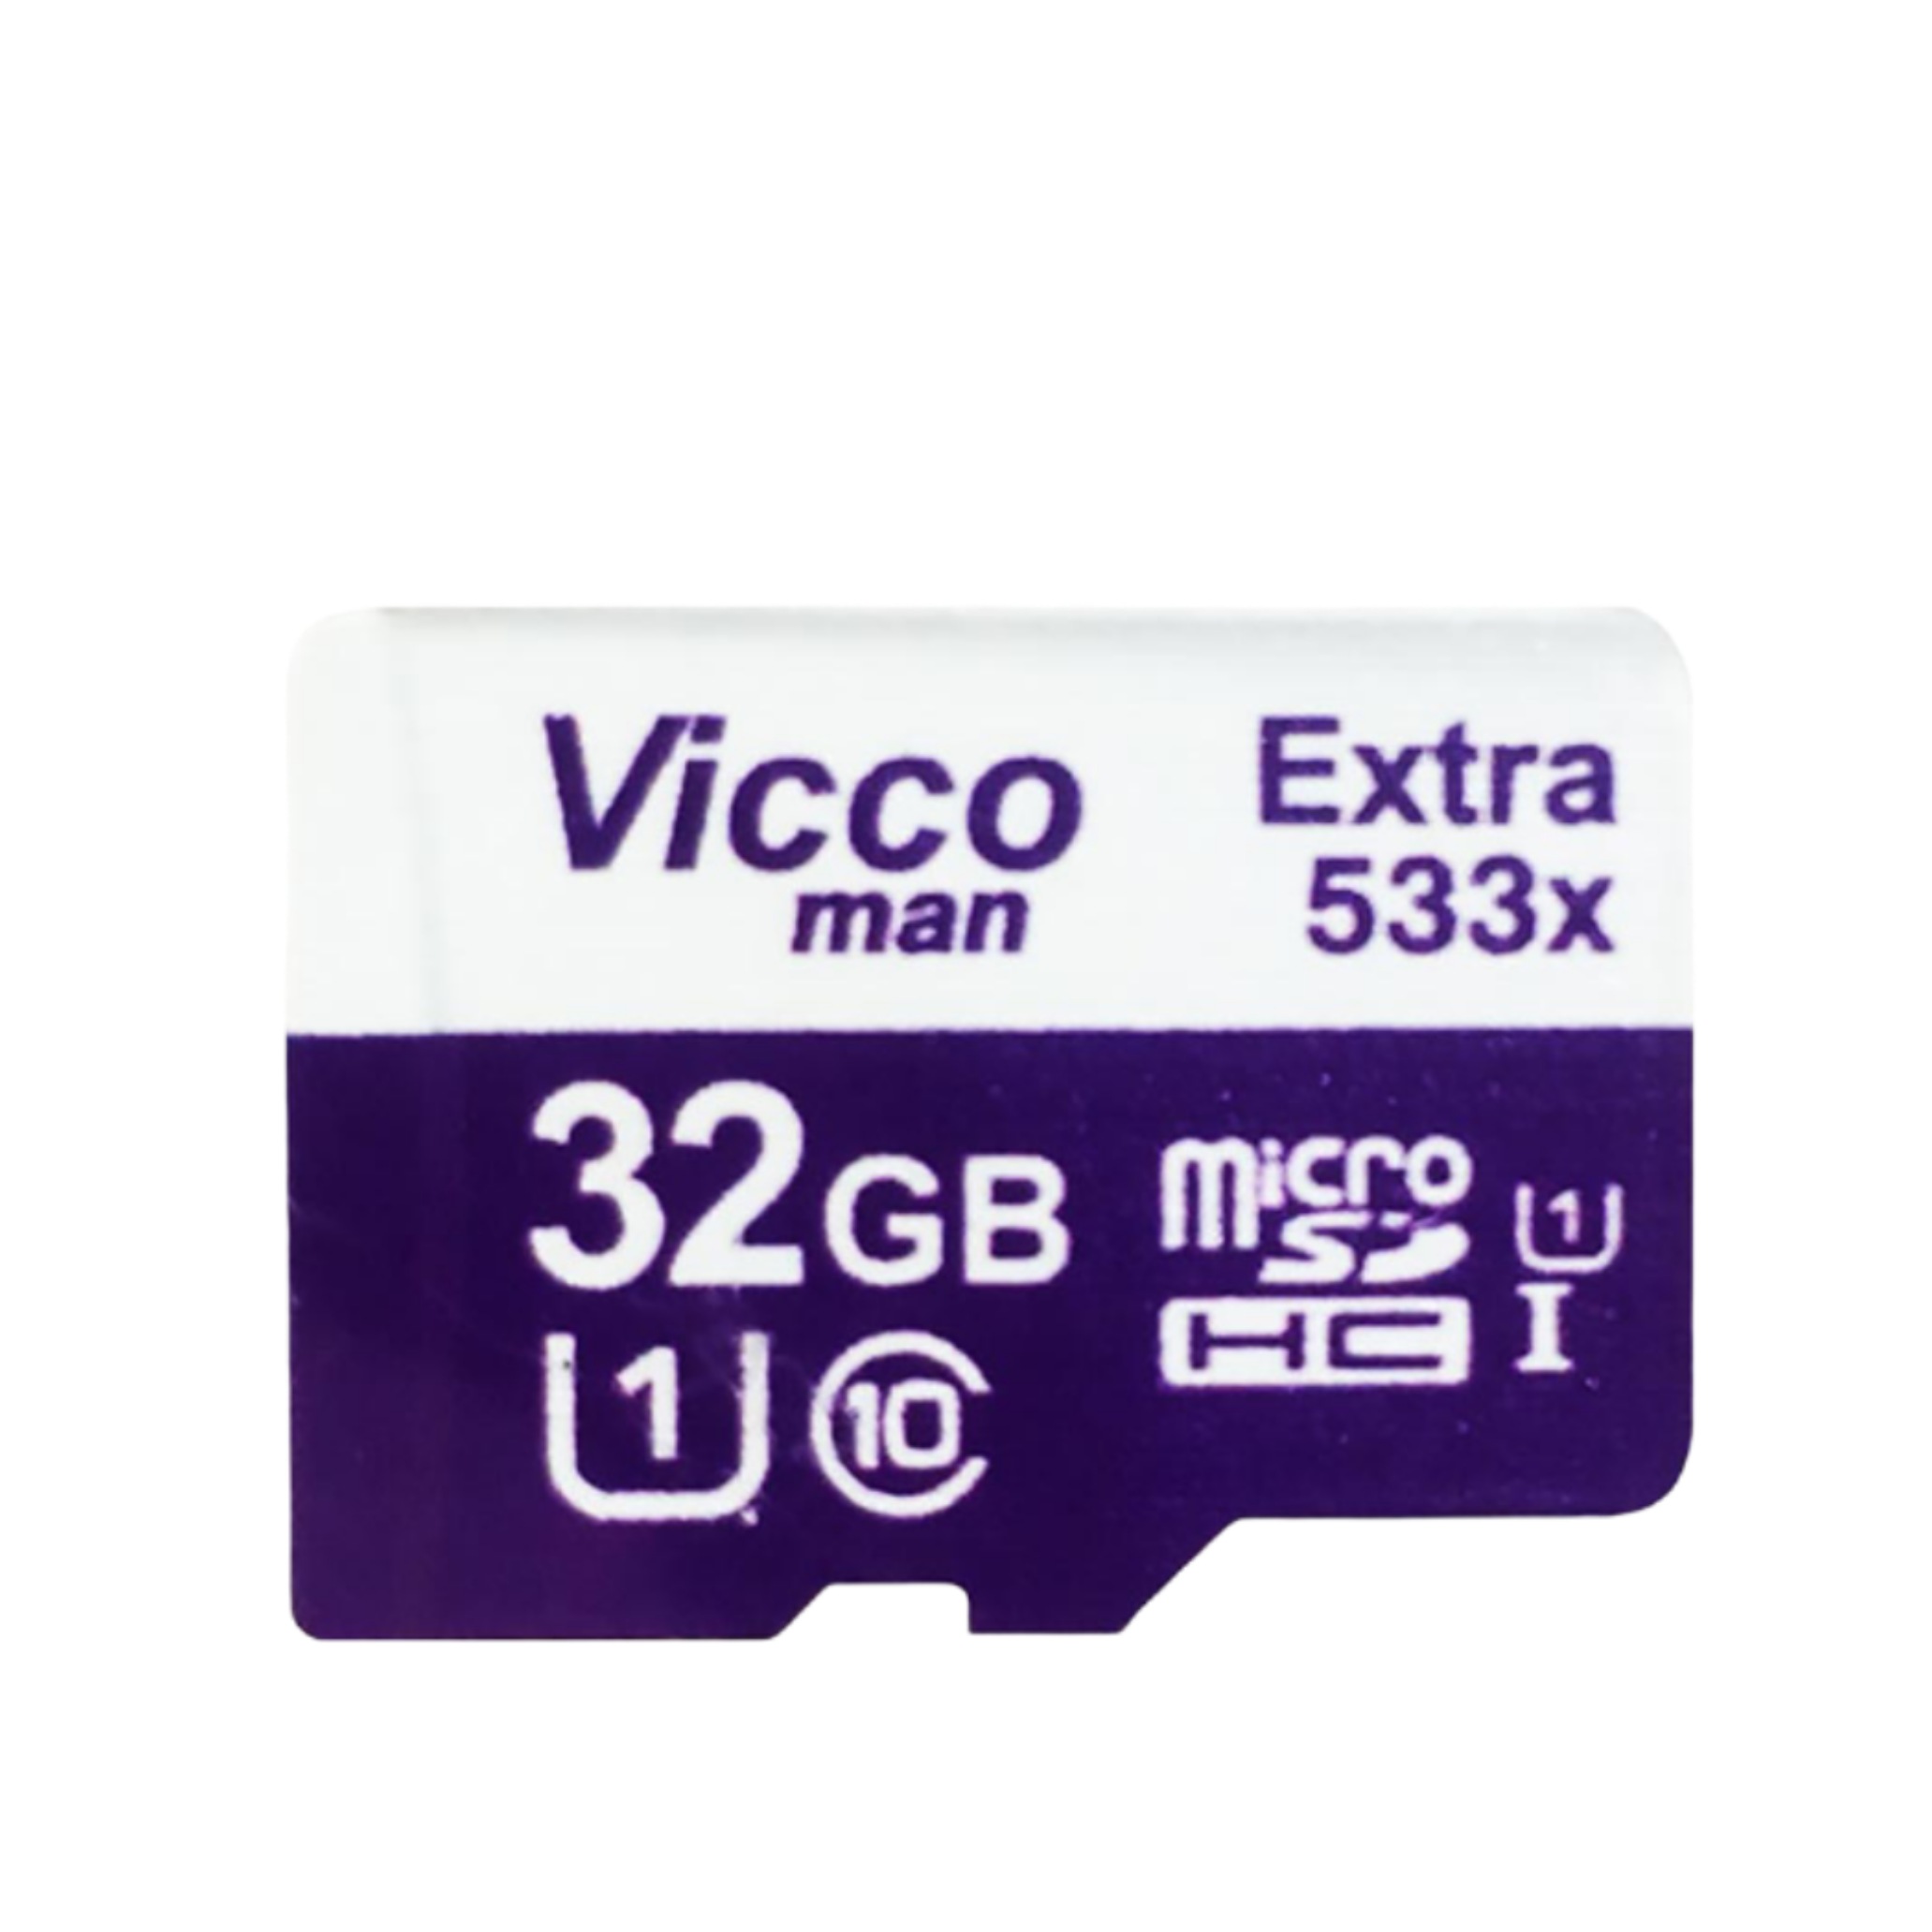 کارت حافظه microSDHC ویکومن مدل Extreme کلاس 10 استاندارد UHS-I U1 سرعت 80MBps ظرفیت 32 گیگابایت